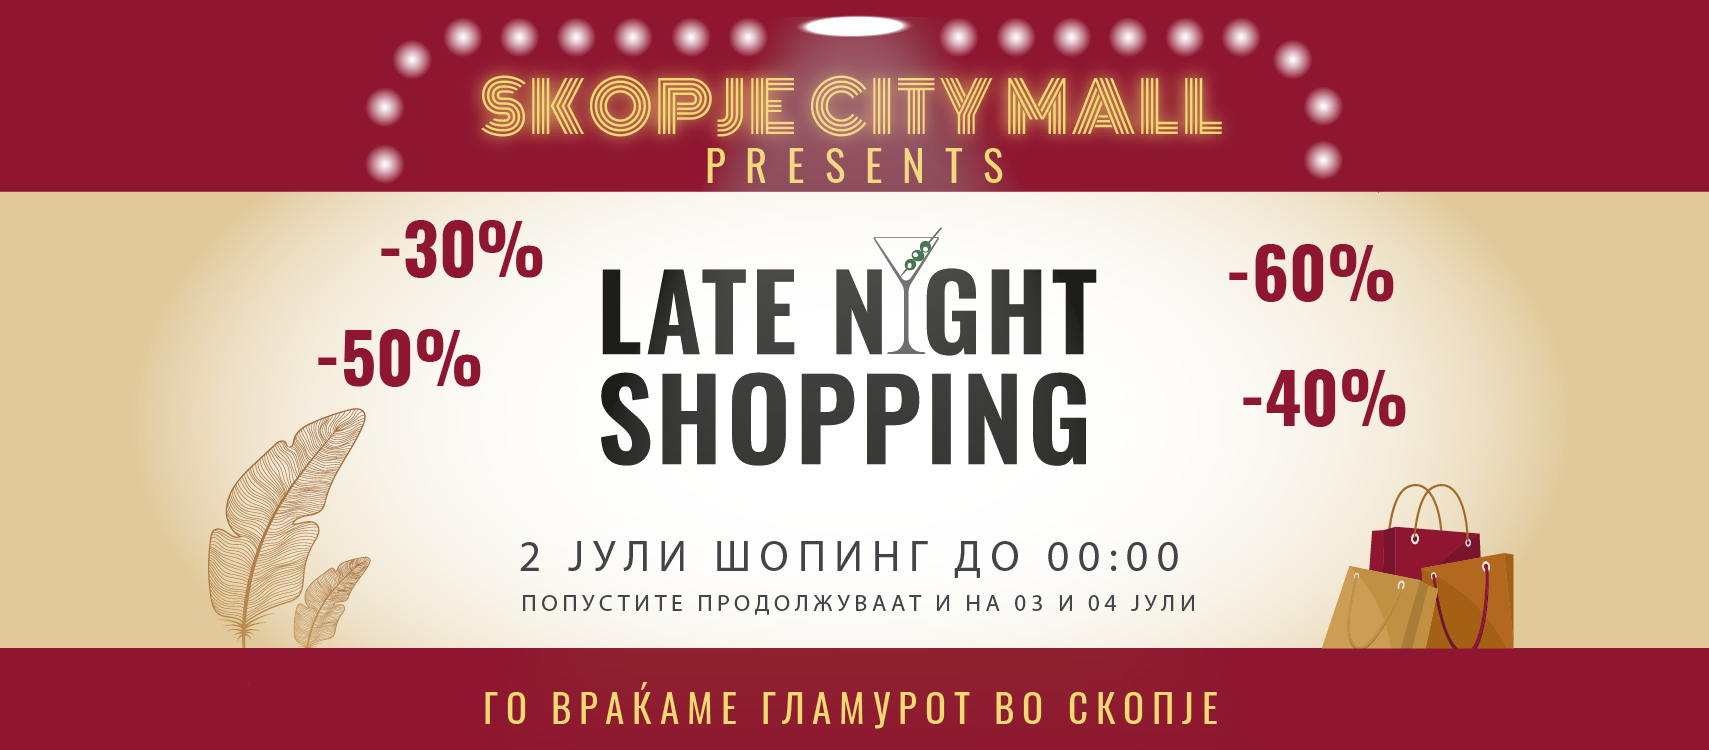 Skopje City Mall најавува Late Night Shopping во холивудски стил